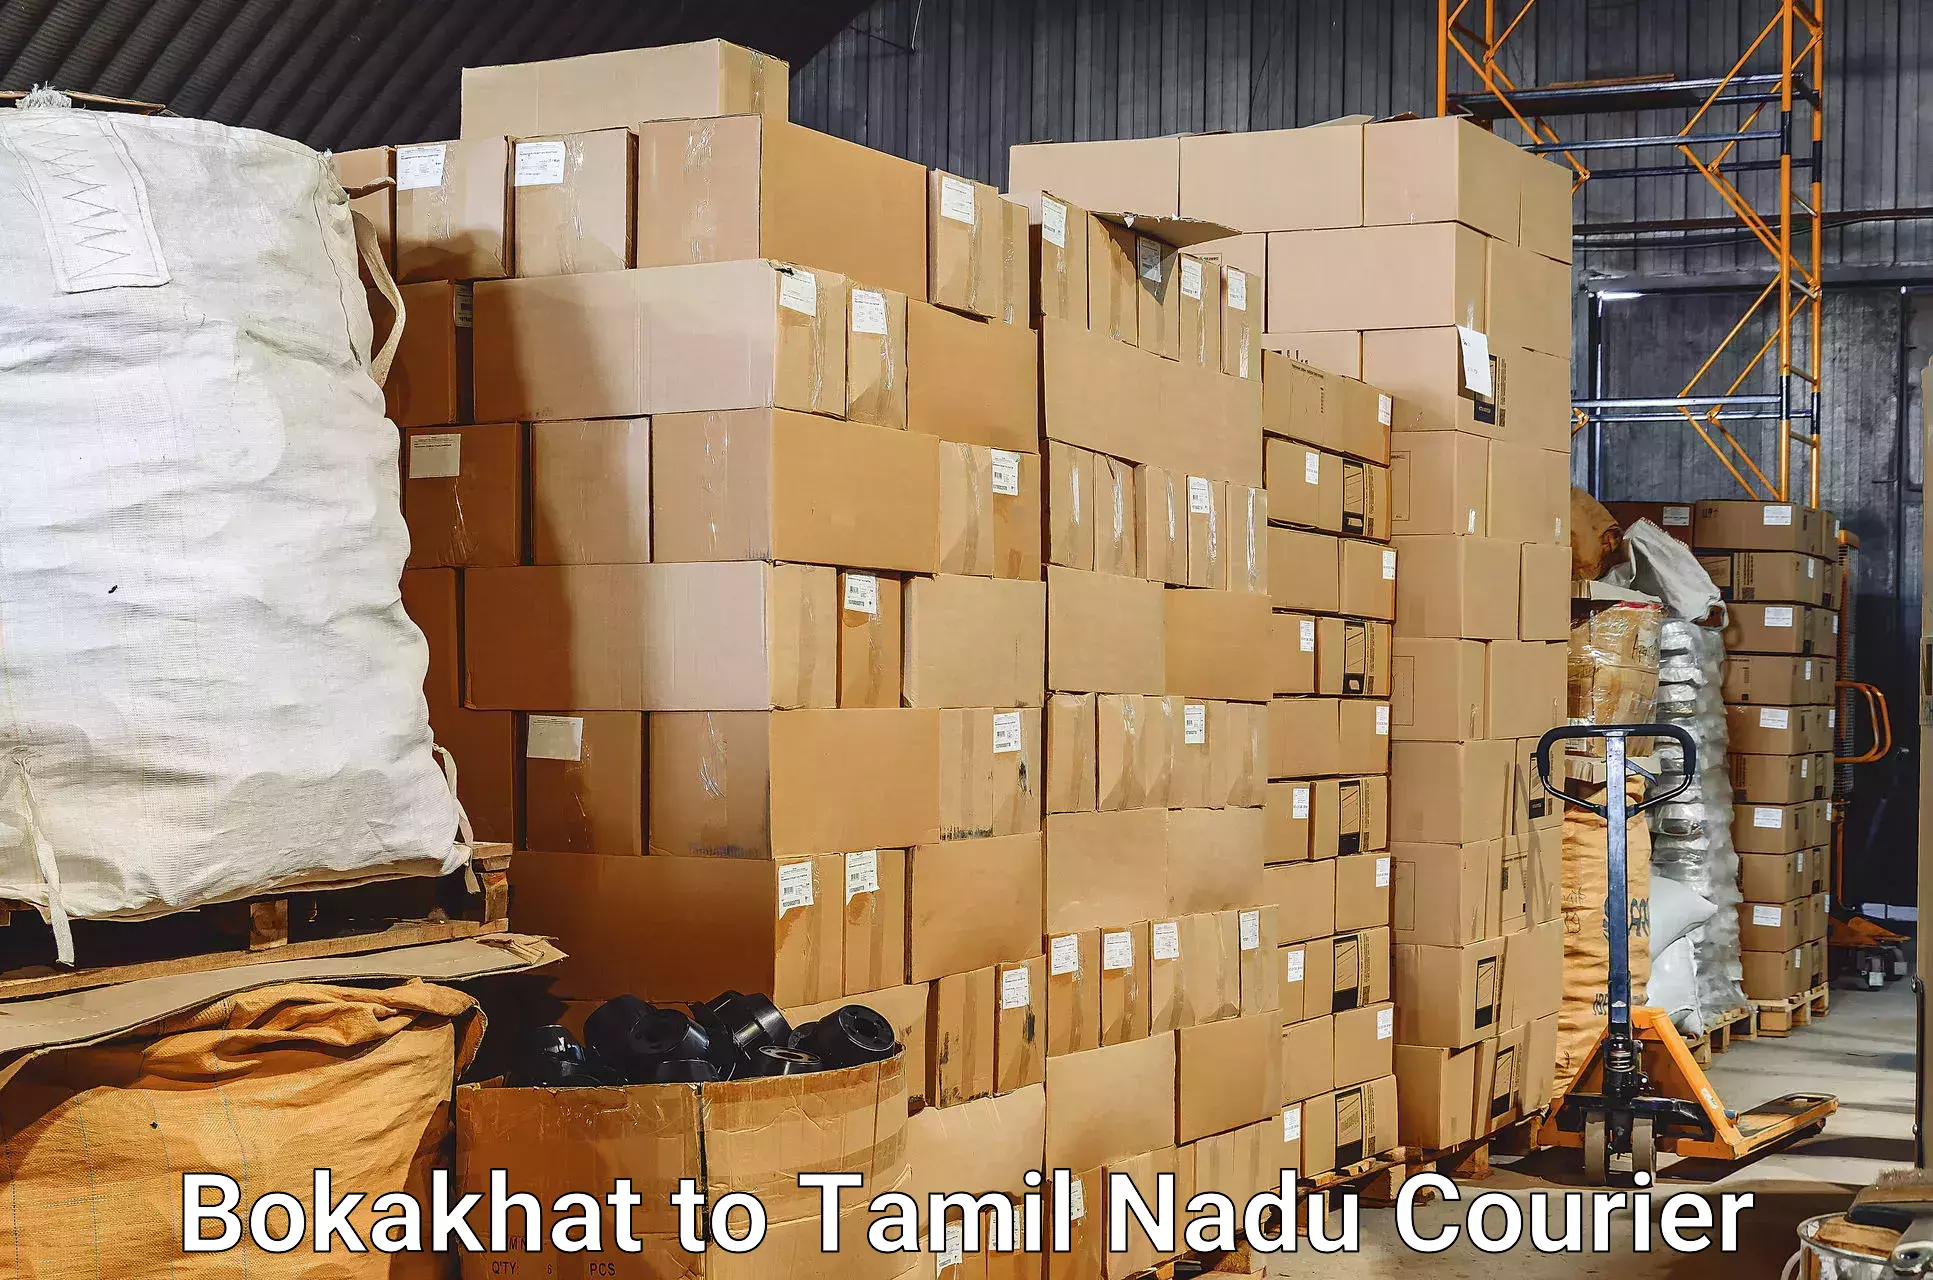 Baggage shipping experts Bokakhat to Dharapuram